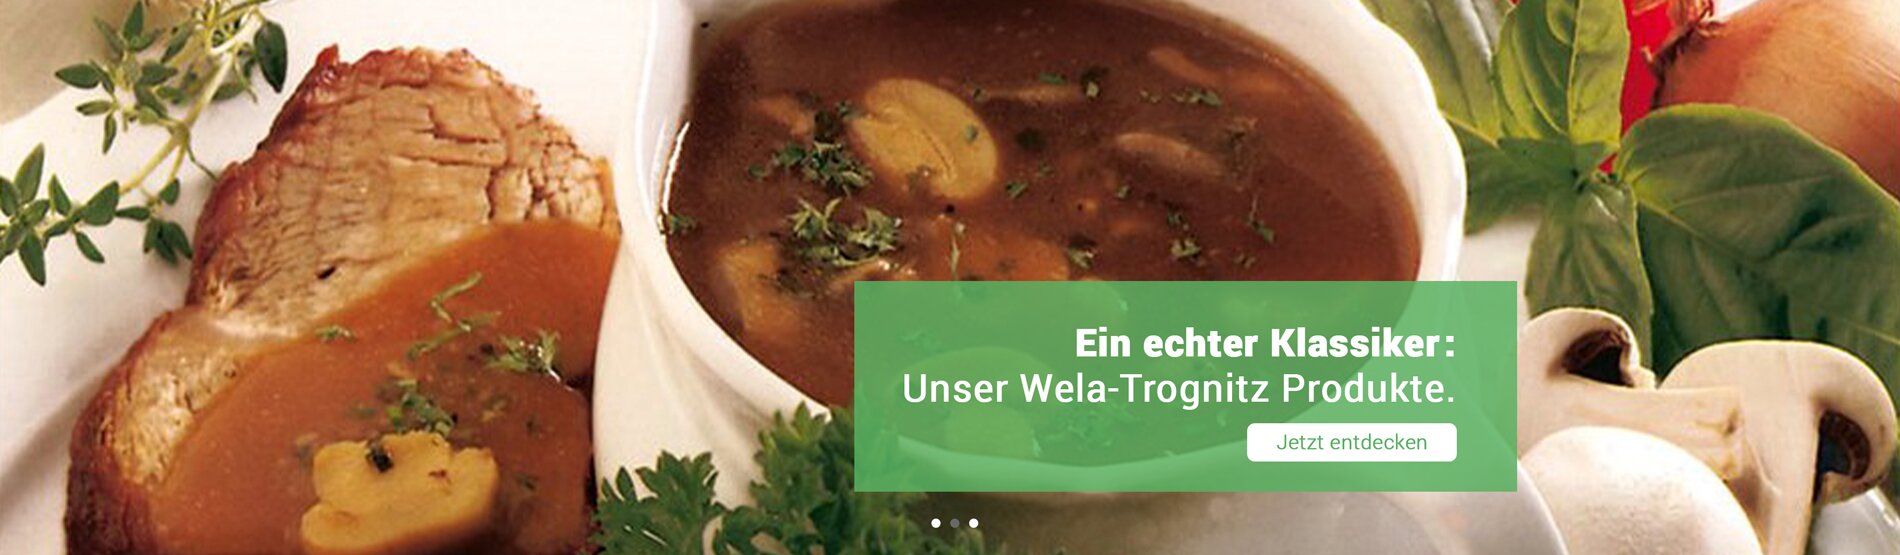 Ein echter Klassiker: die Soßen, Suppen und Gewürze von Wela-Trognitz